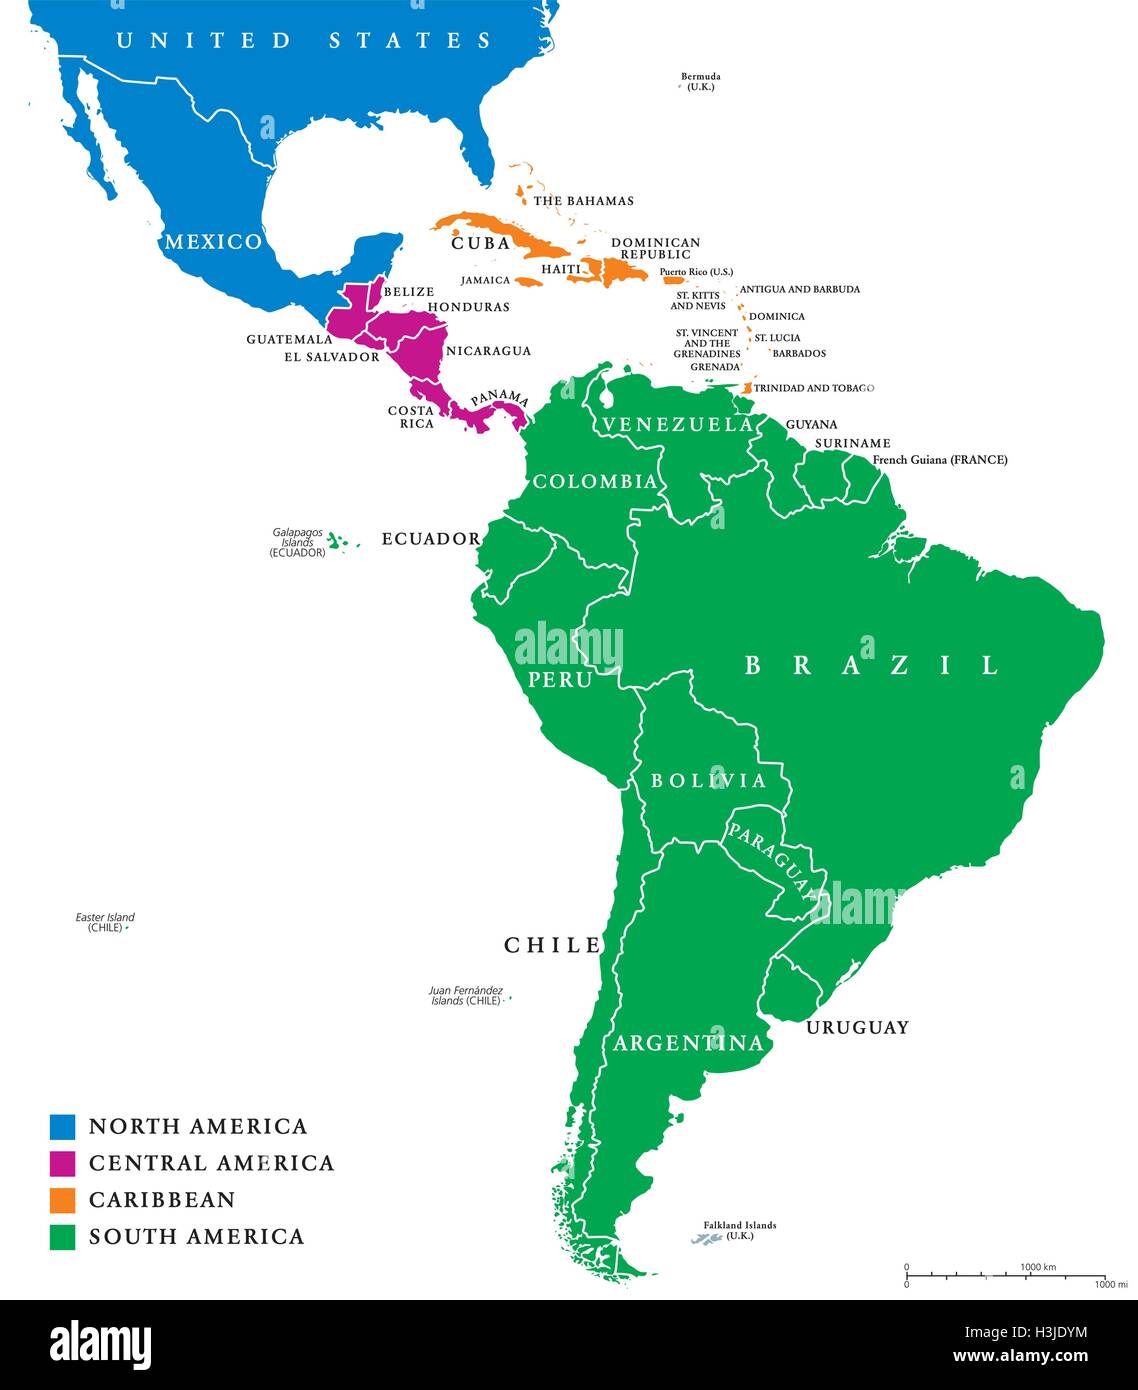 Carte politique de l'Amérique latine. Les sous-régions dans les Caraïbes, en Afrique du Nord, en Amérique centrale et du Sud dans des couleurs différentes. Vector Illustration de Vecteur